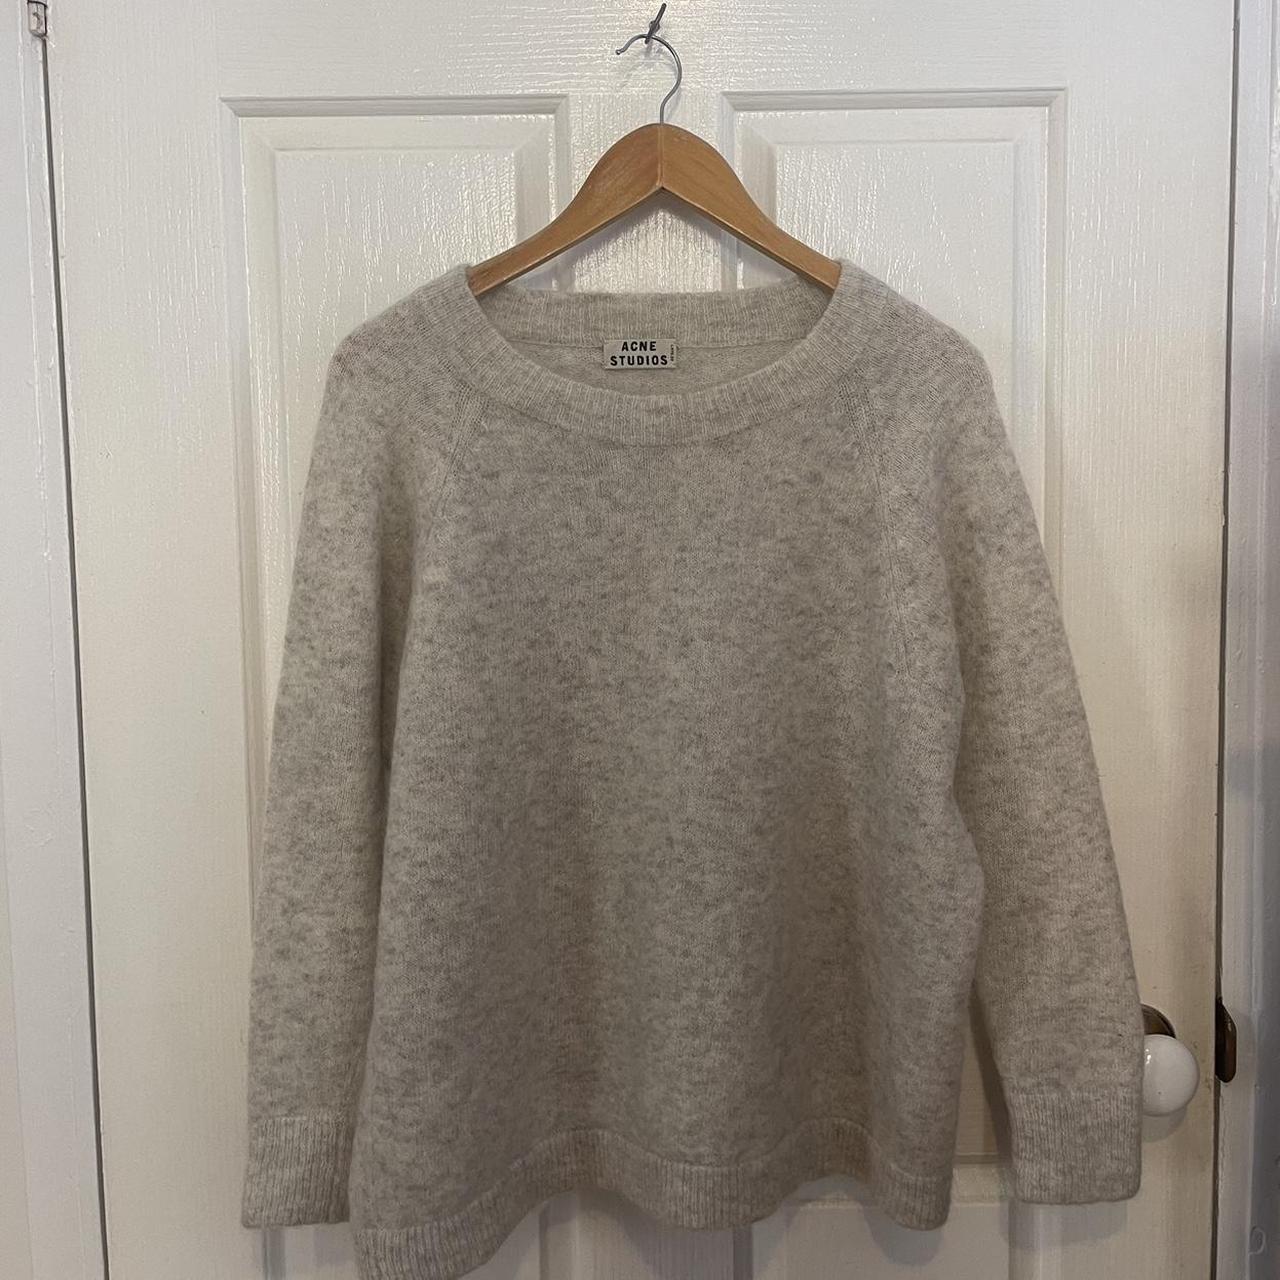 acne studios woolen sweater 🎀 rpr $560 - Depop